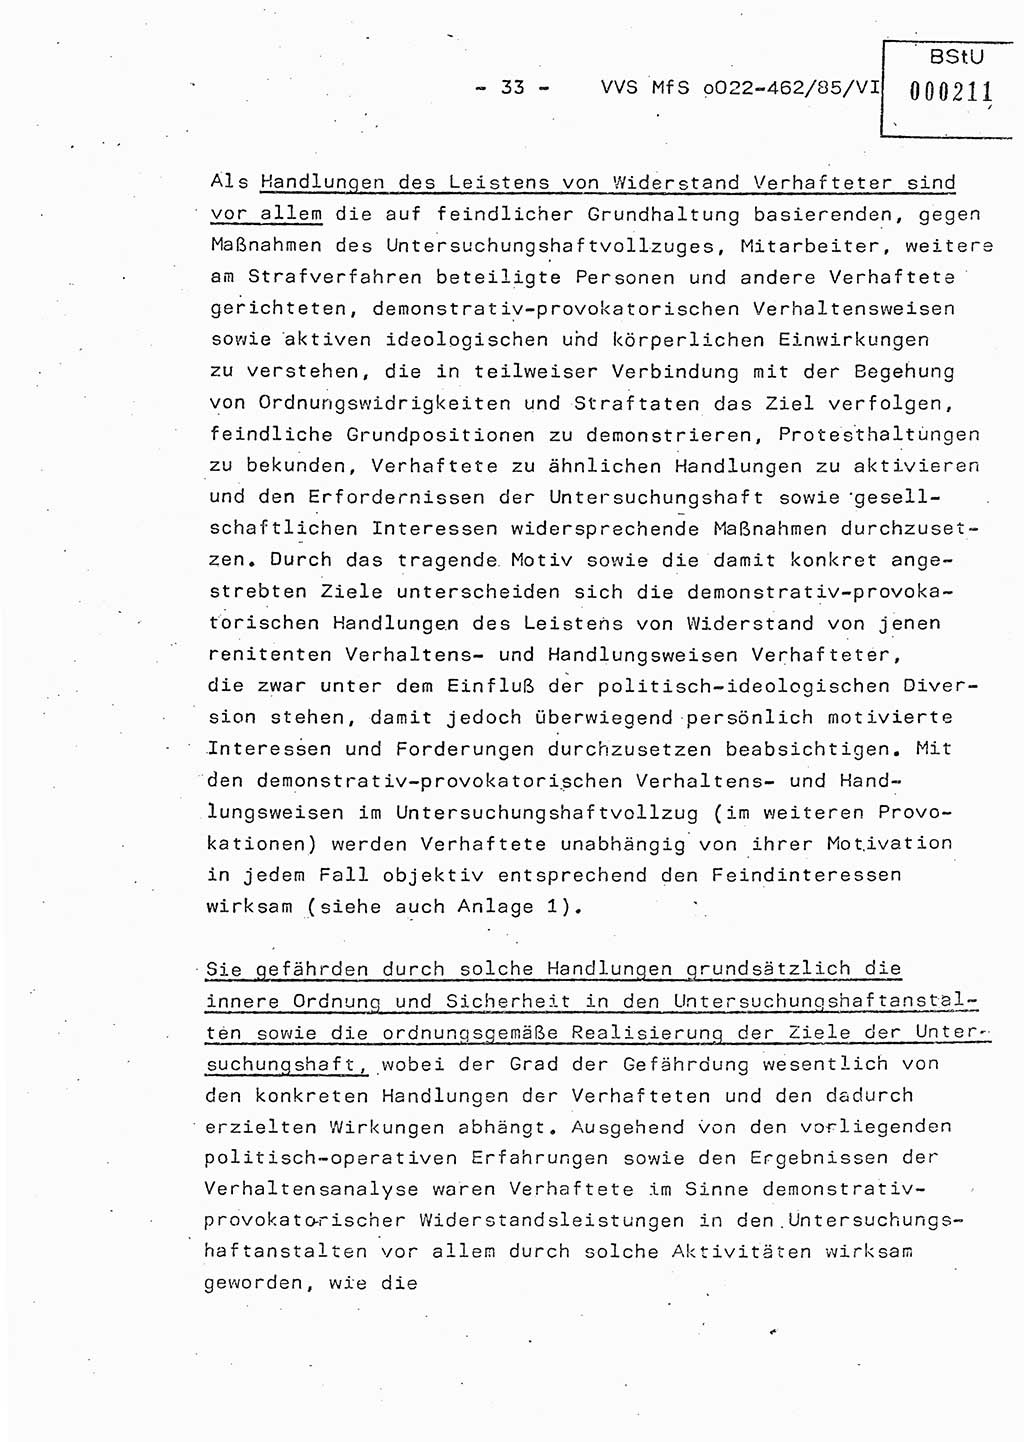 Der Untersuchungshaftvollzug im MfS, Schulungsmaterial Teil Ⅵ, Ministerium für Staatssicherheit [Deutsche Demokratische Republik (DDR)], Abteilung (Abt.) ⅩⅣ, Vertrauliche Verschlußsache (VVS) o022-462/85/Ⅵ, Berlin 1985, Seite 33 (Sch.-Mat. Ⅵ MfS DDR Abt. ⅩⅣ VVS o022-462/85/Ⅵ 1985, S. 33)